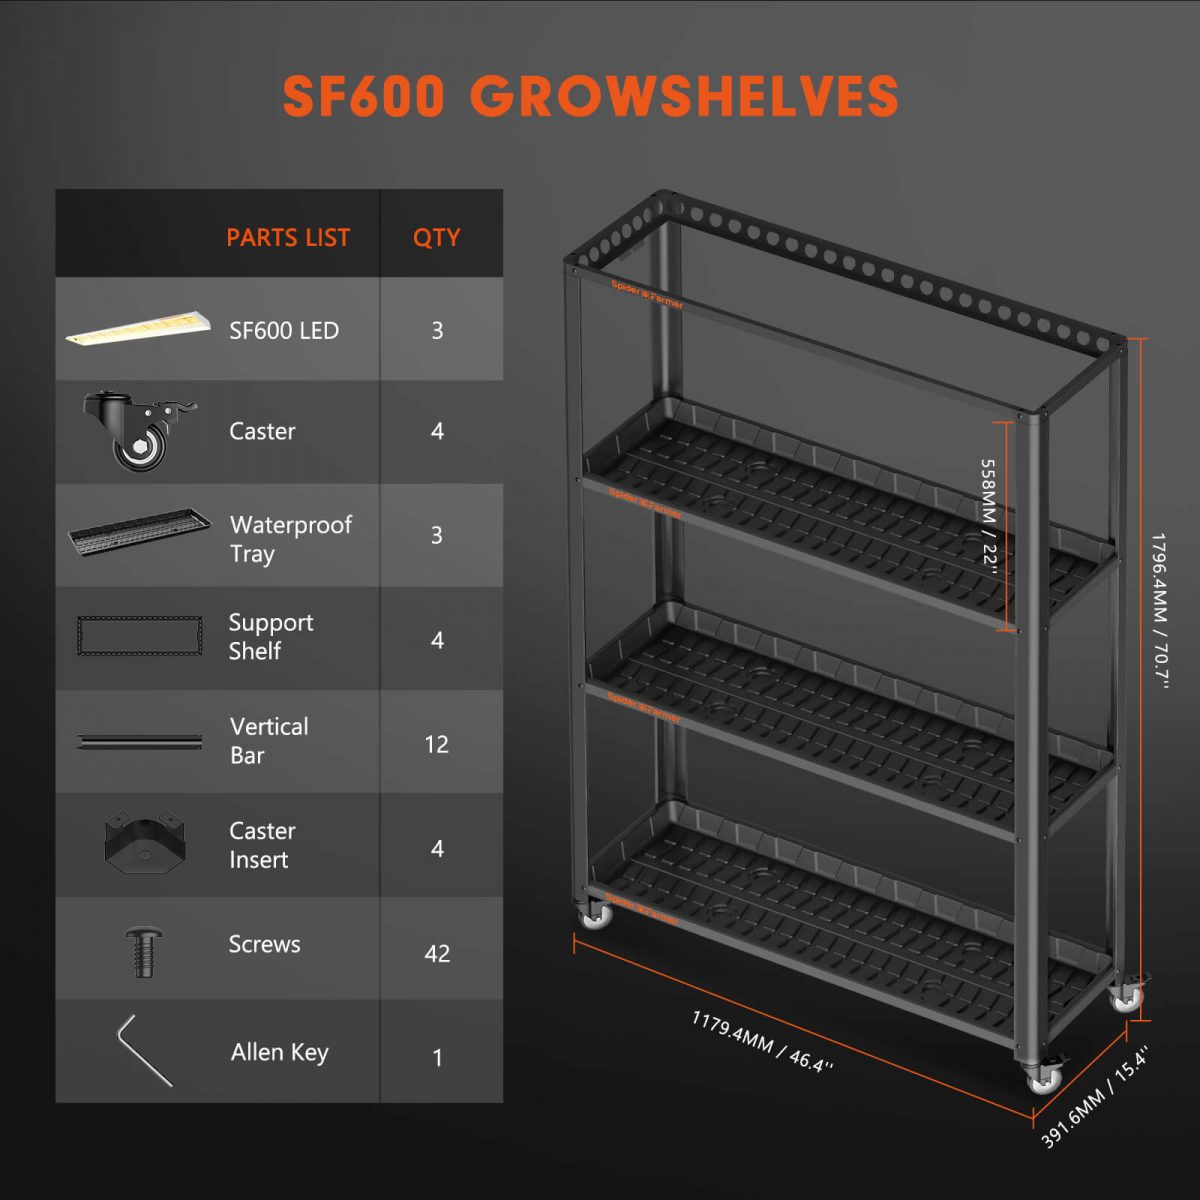 SF600-growshelves package